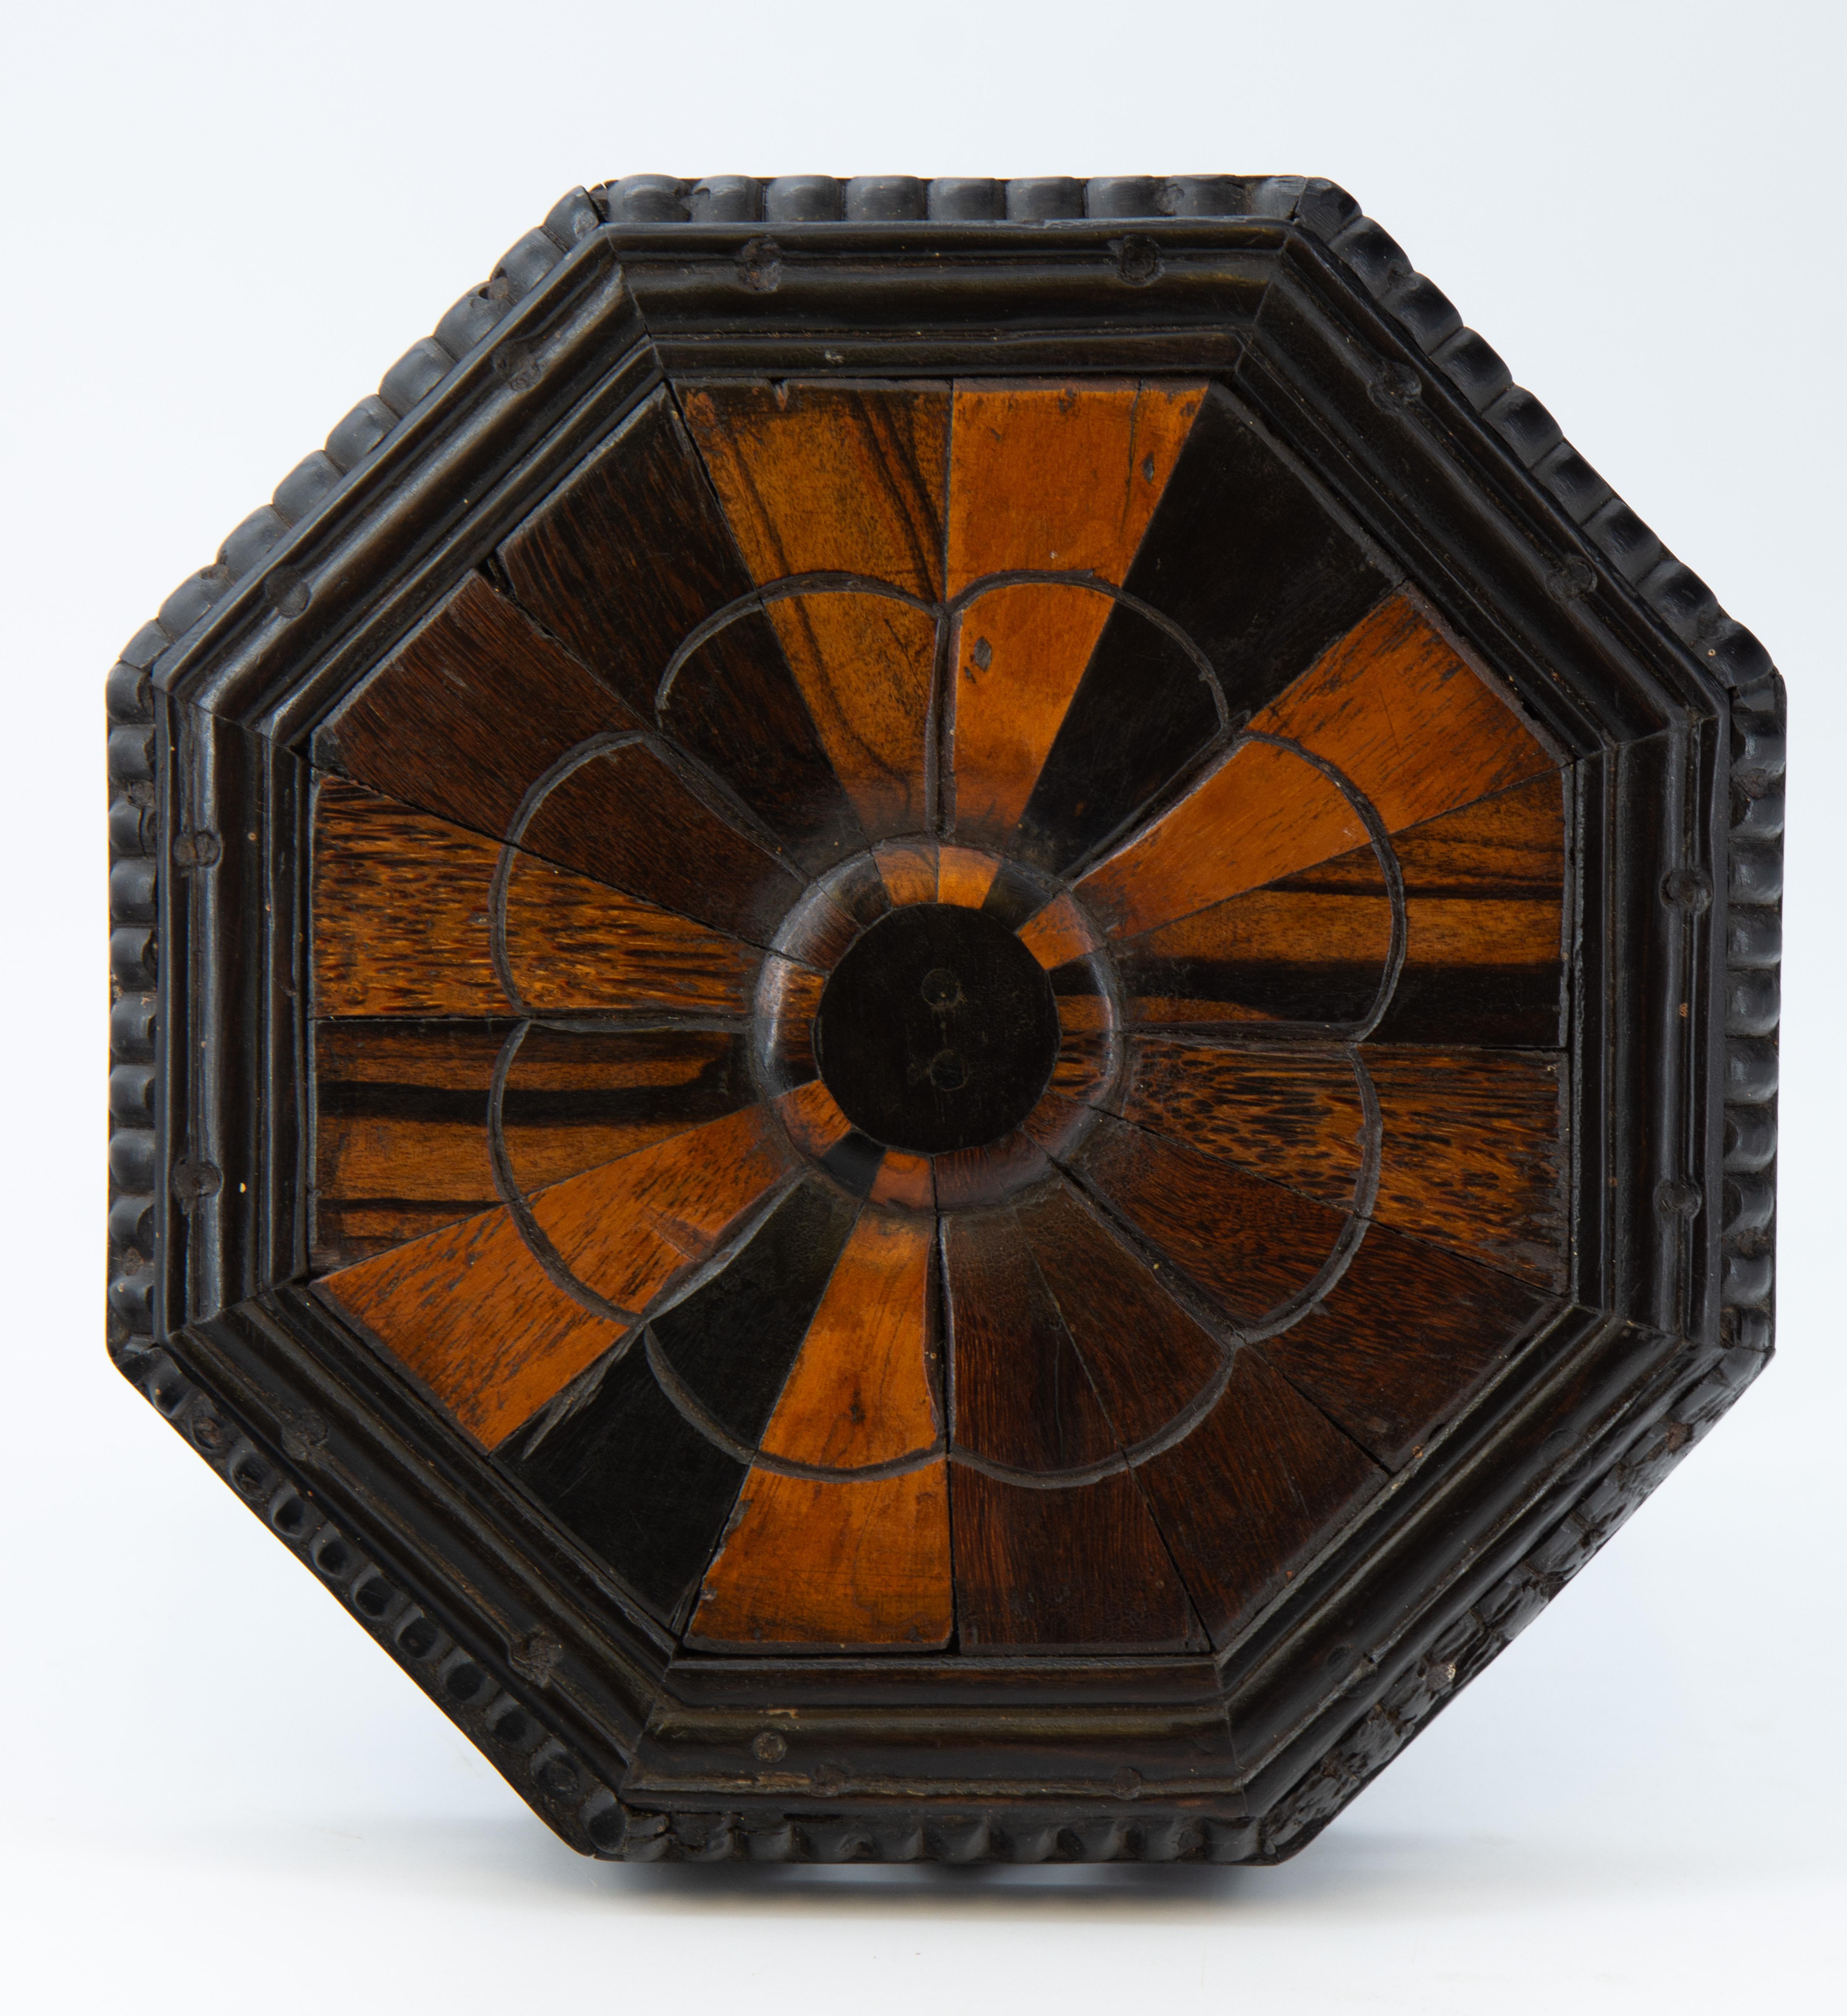 Rare table octogonale miniature en ébène et bois de spécimen. Ceylanais/Indien. Circa 19ème siècle.

Livraison gratuite au Royaume-Uni par l'intermédiaire d'une société de transport de colis sélectionnée.

Le plateau est plaqué radialement de bois